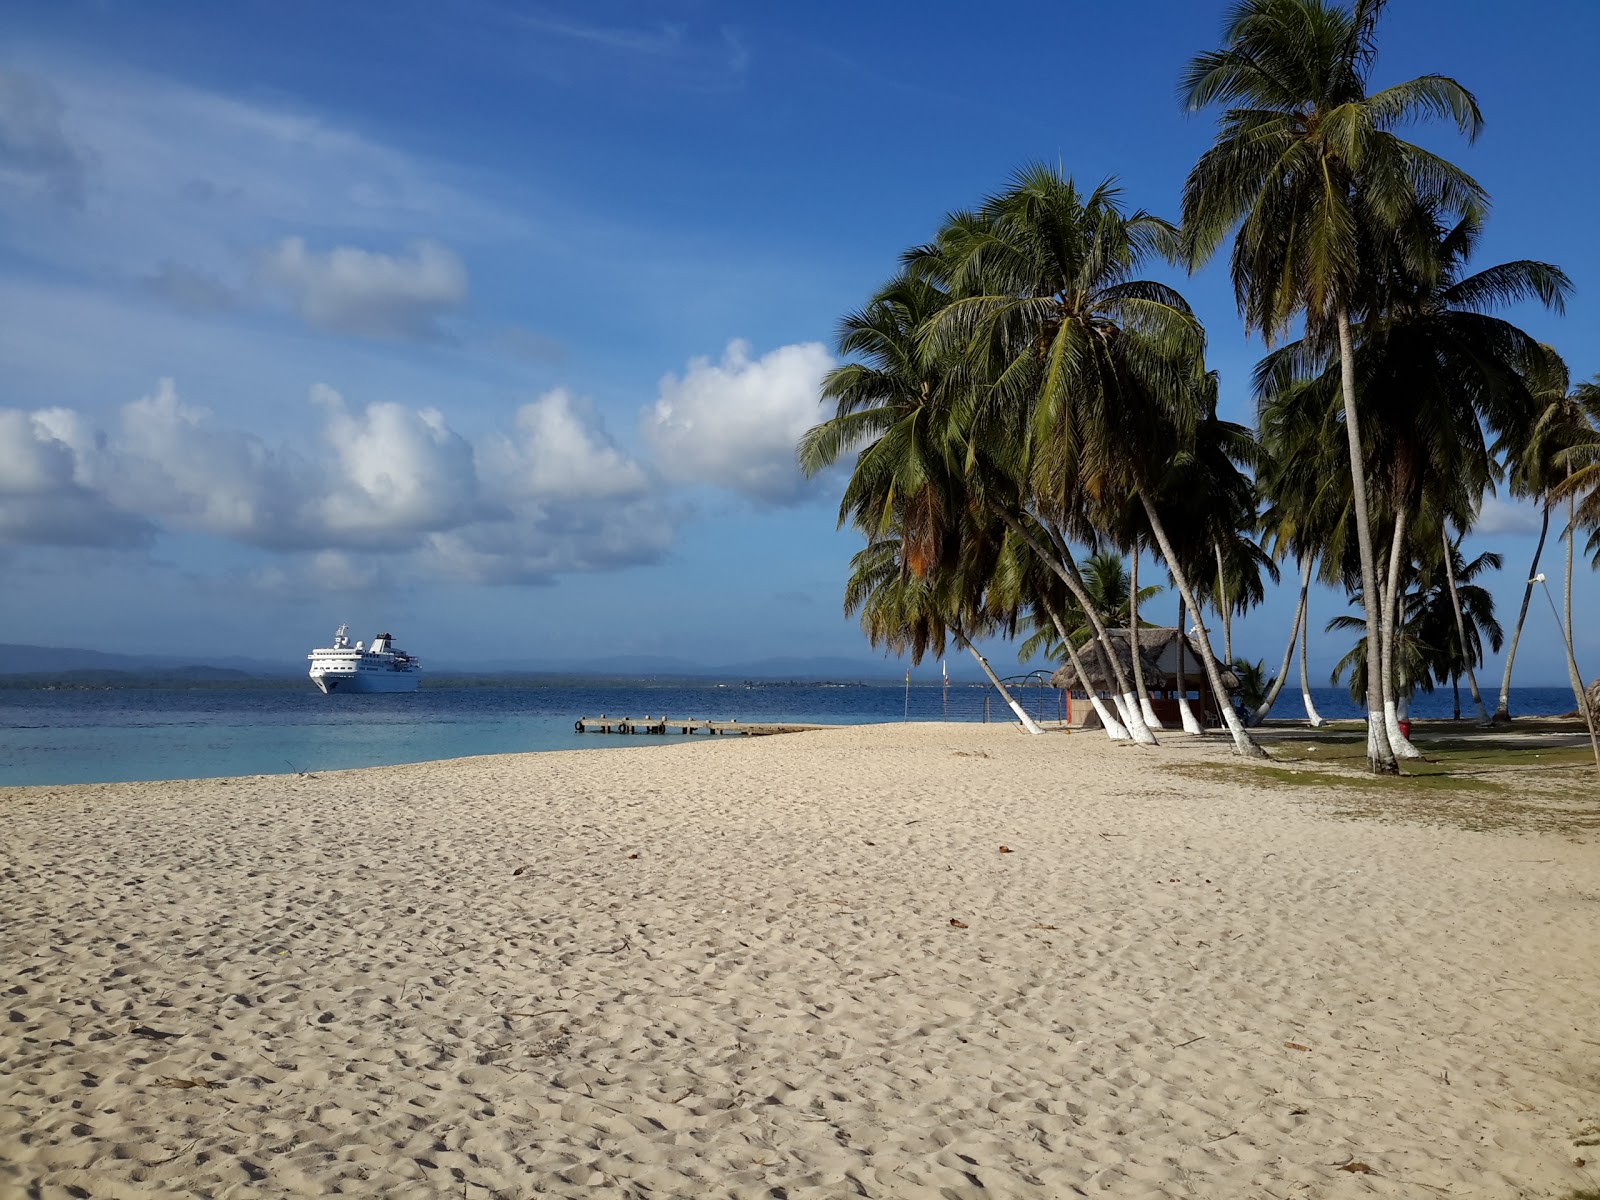 Foto af Guna Yala Gulf island - populært sted blandt afslapningskendere